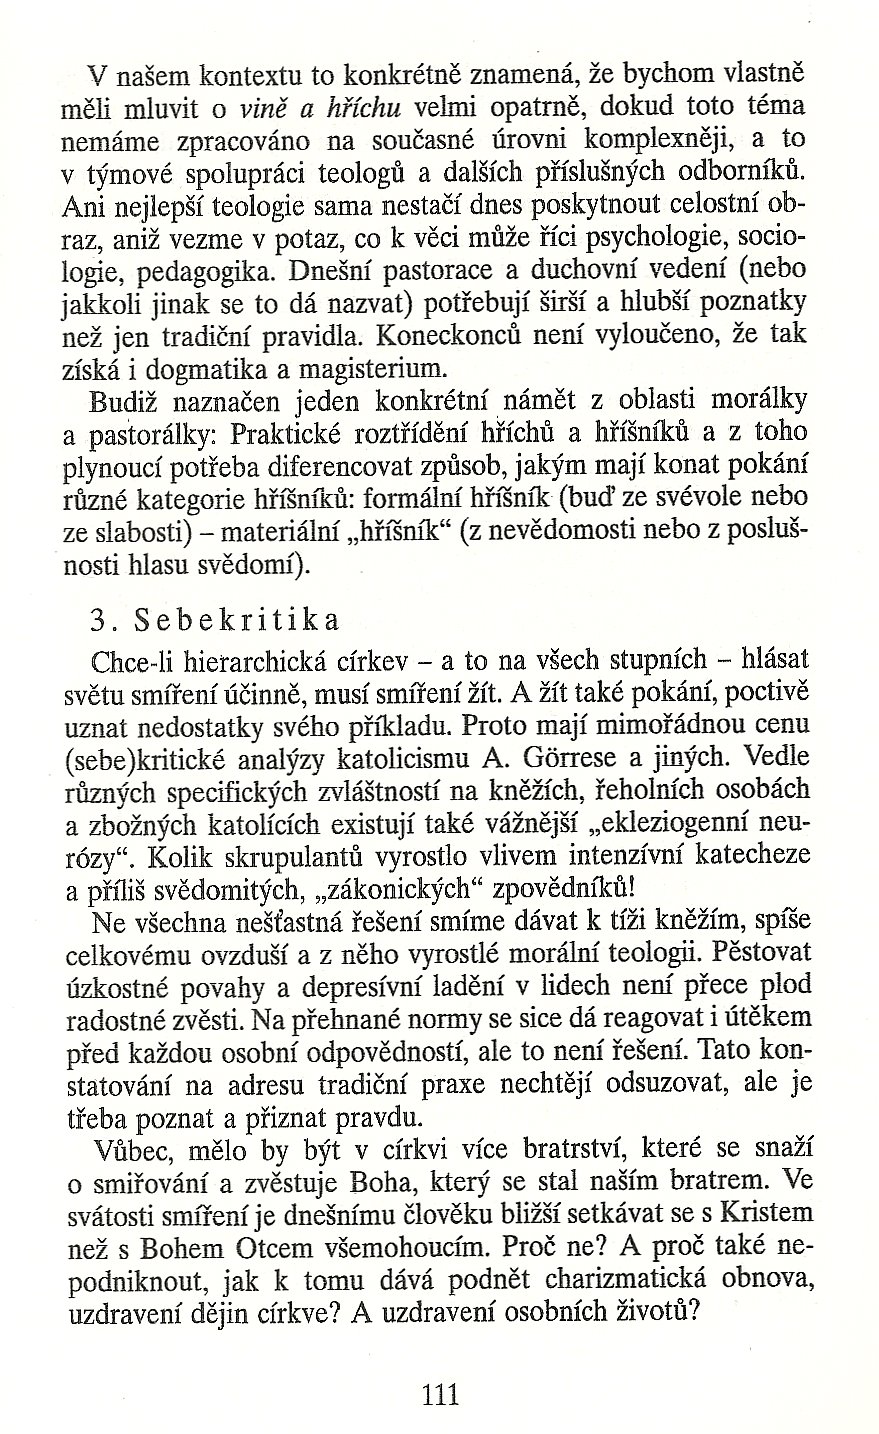 Slovo o této době / Pokání anebo smíření (K biskupskému synodu 1983) / strana 111